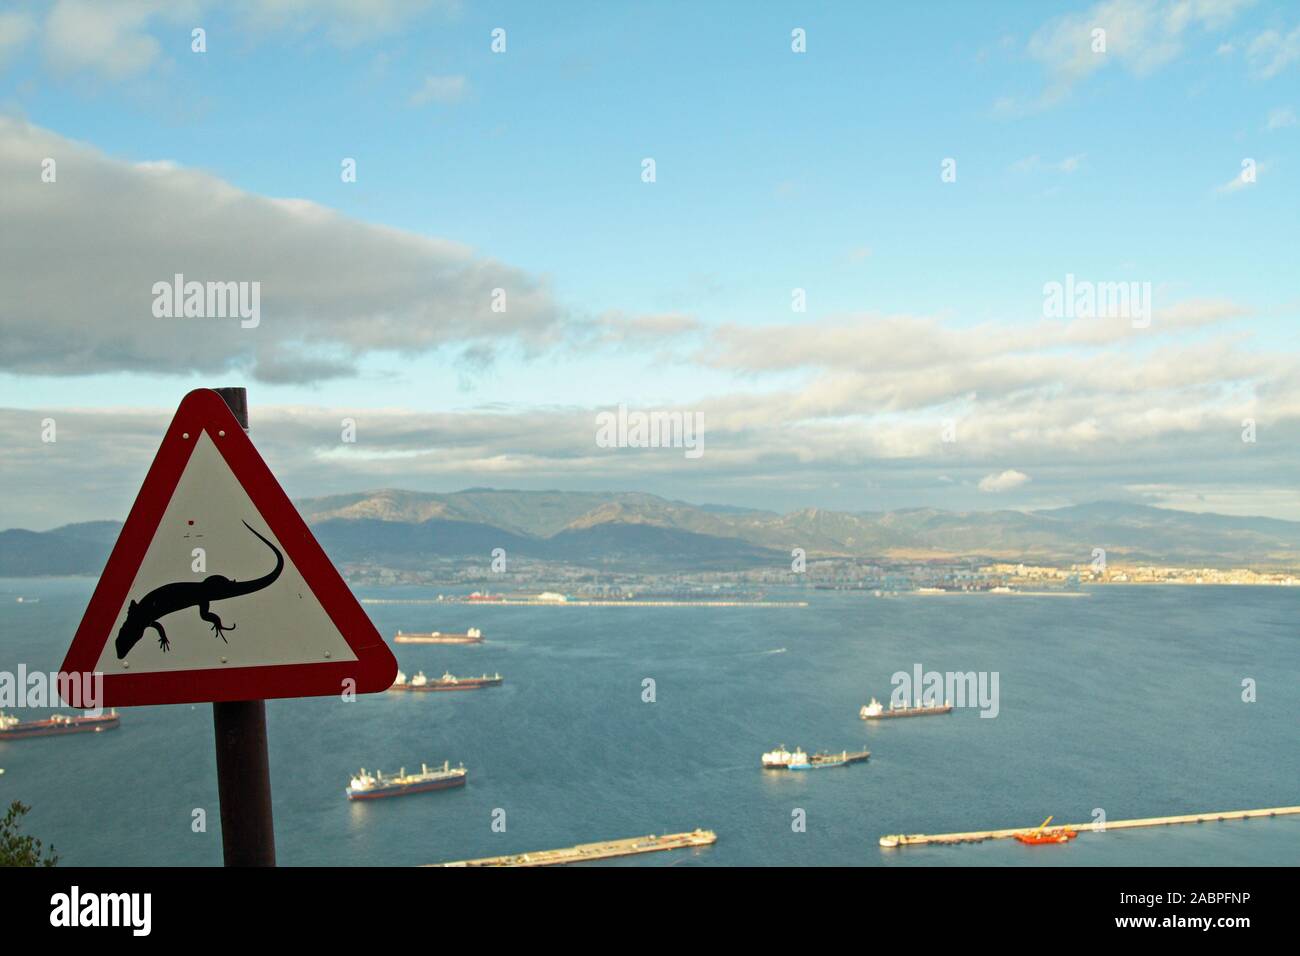 Señal de advertencia de lagartos, Willis's Road, cerca de la Princesa Carolina de batería, el Peñón de Gibraltar, mirando a la bahía de Gibraltar a Algeciras en España Foto de stock